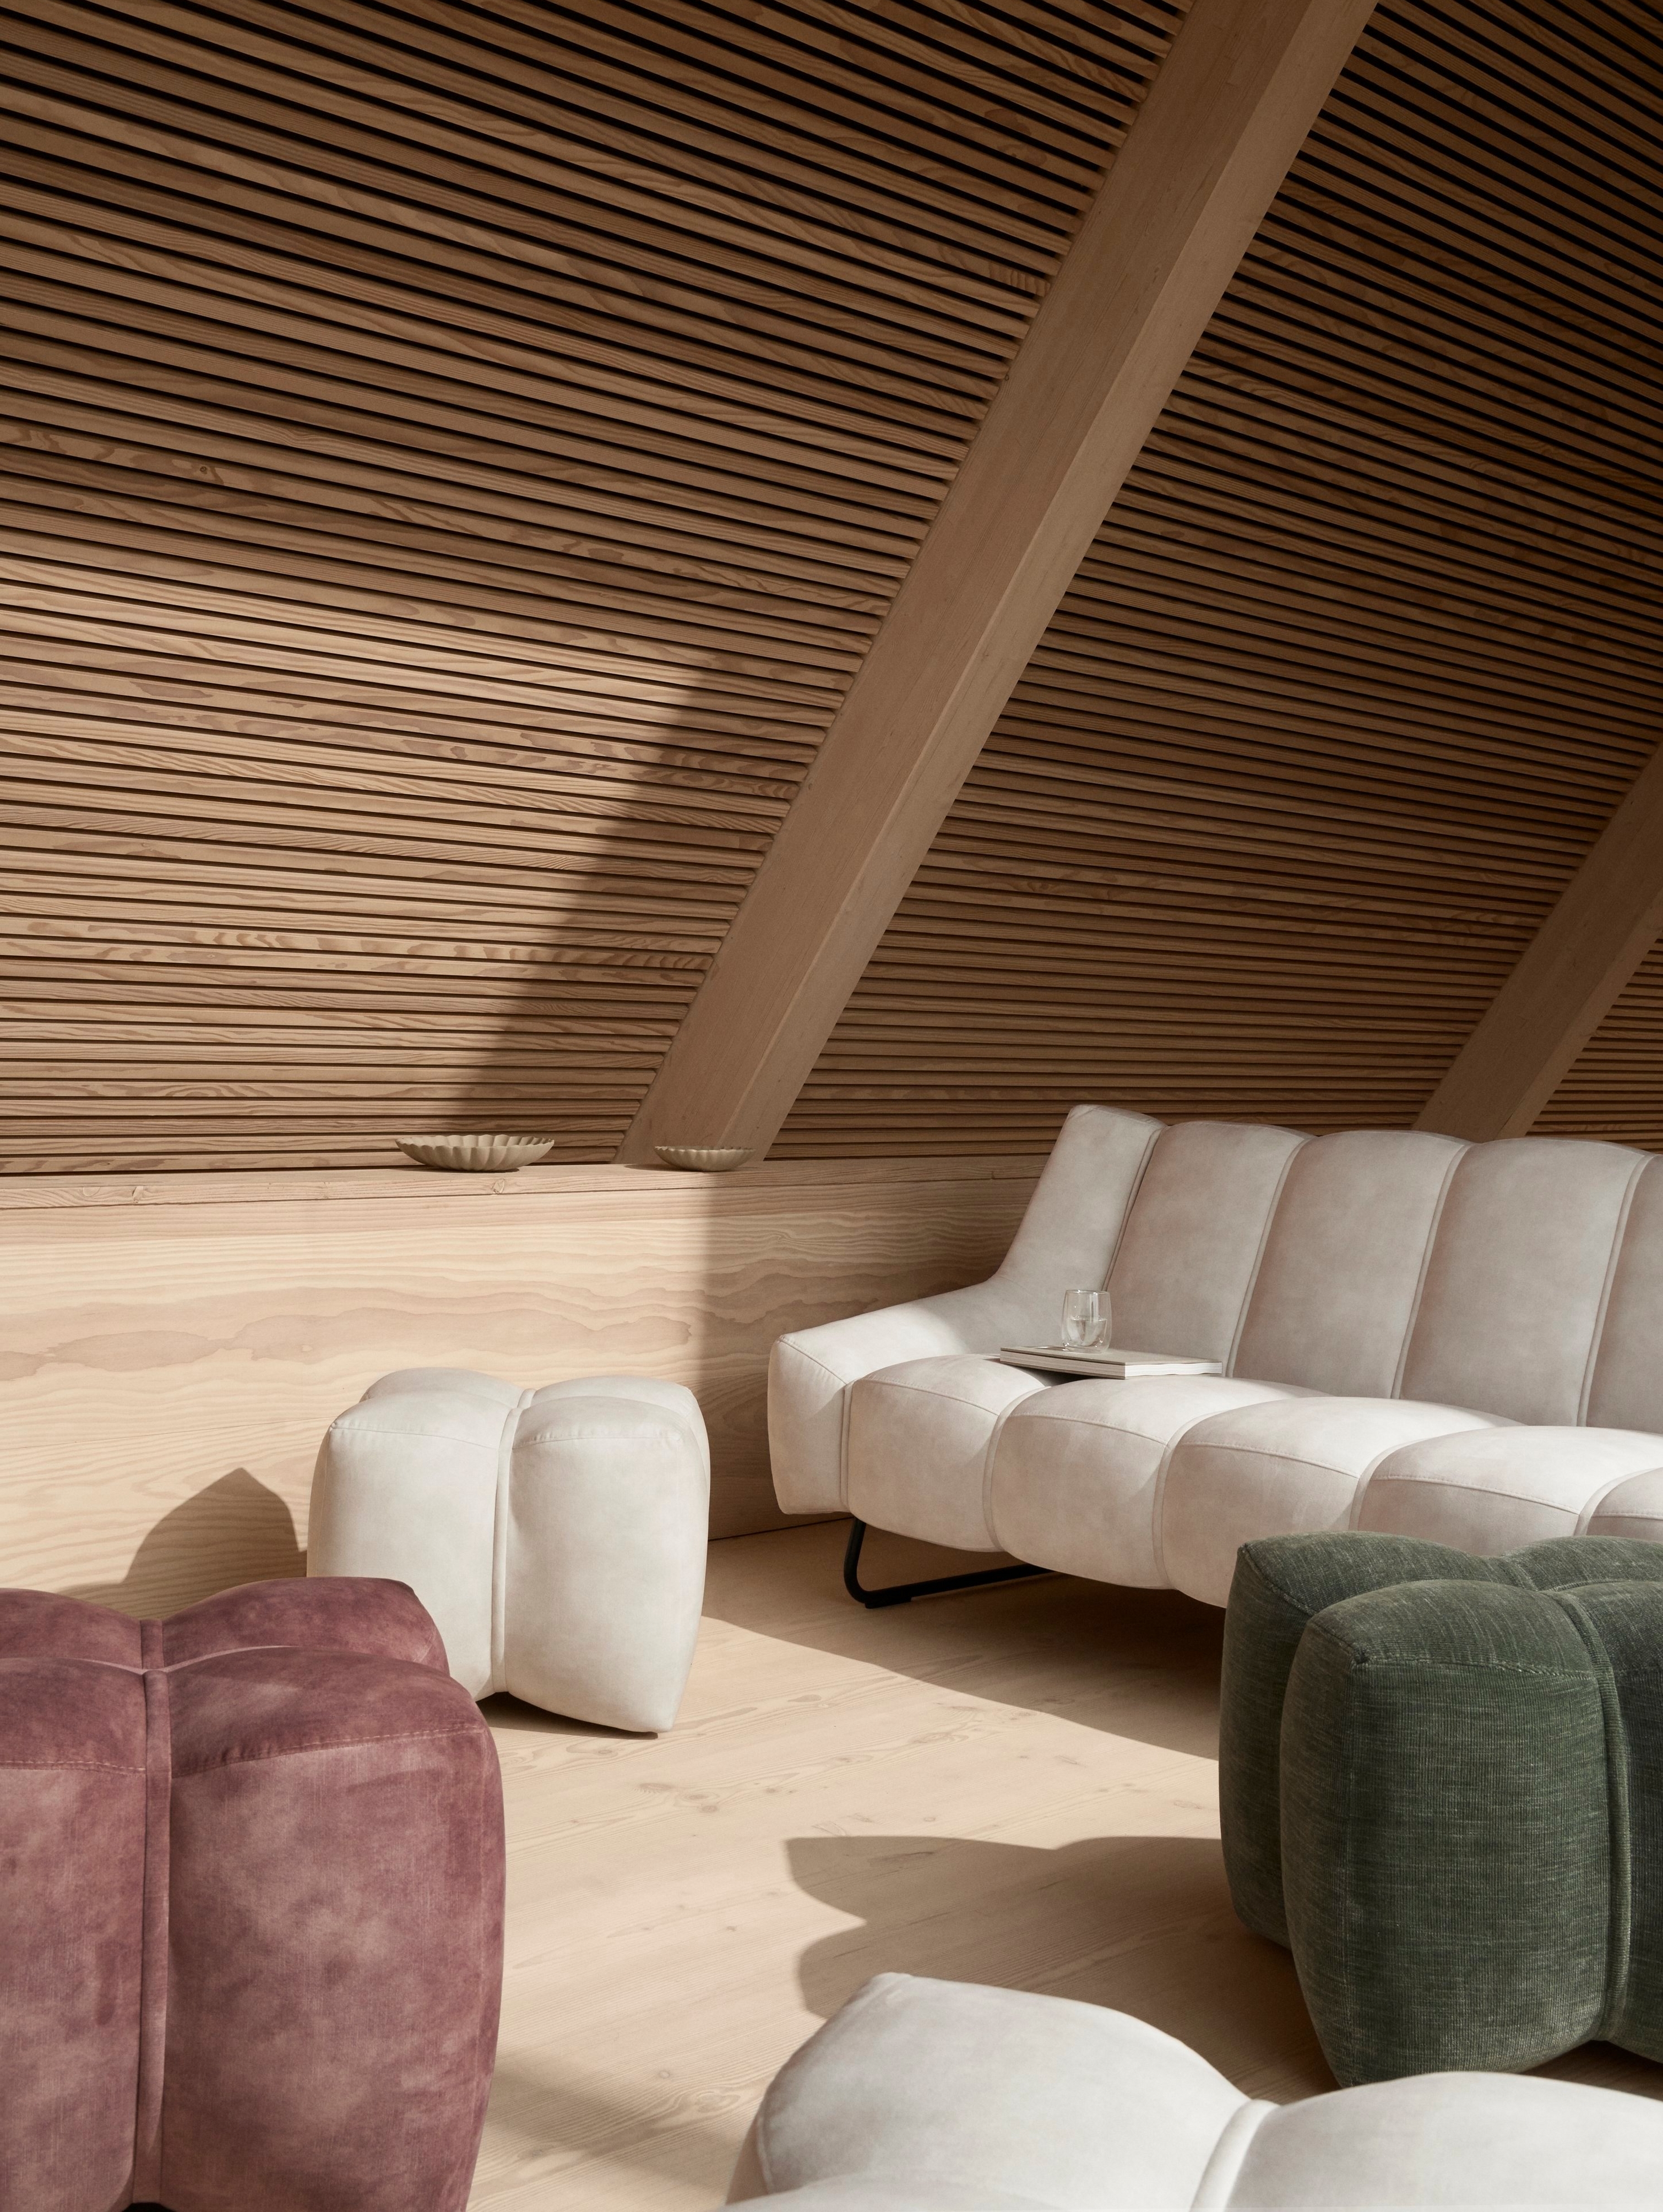 A-образная гостиная нейтральных оттенков с 3-местным диваном Nawabari с обивкой из ткани Ravello бежевого цвета.